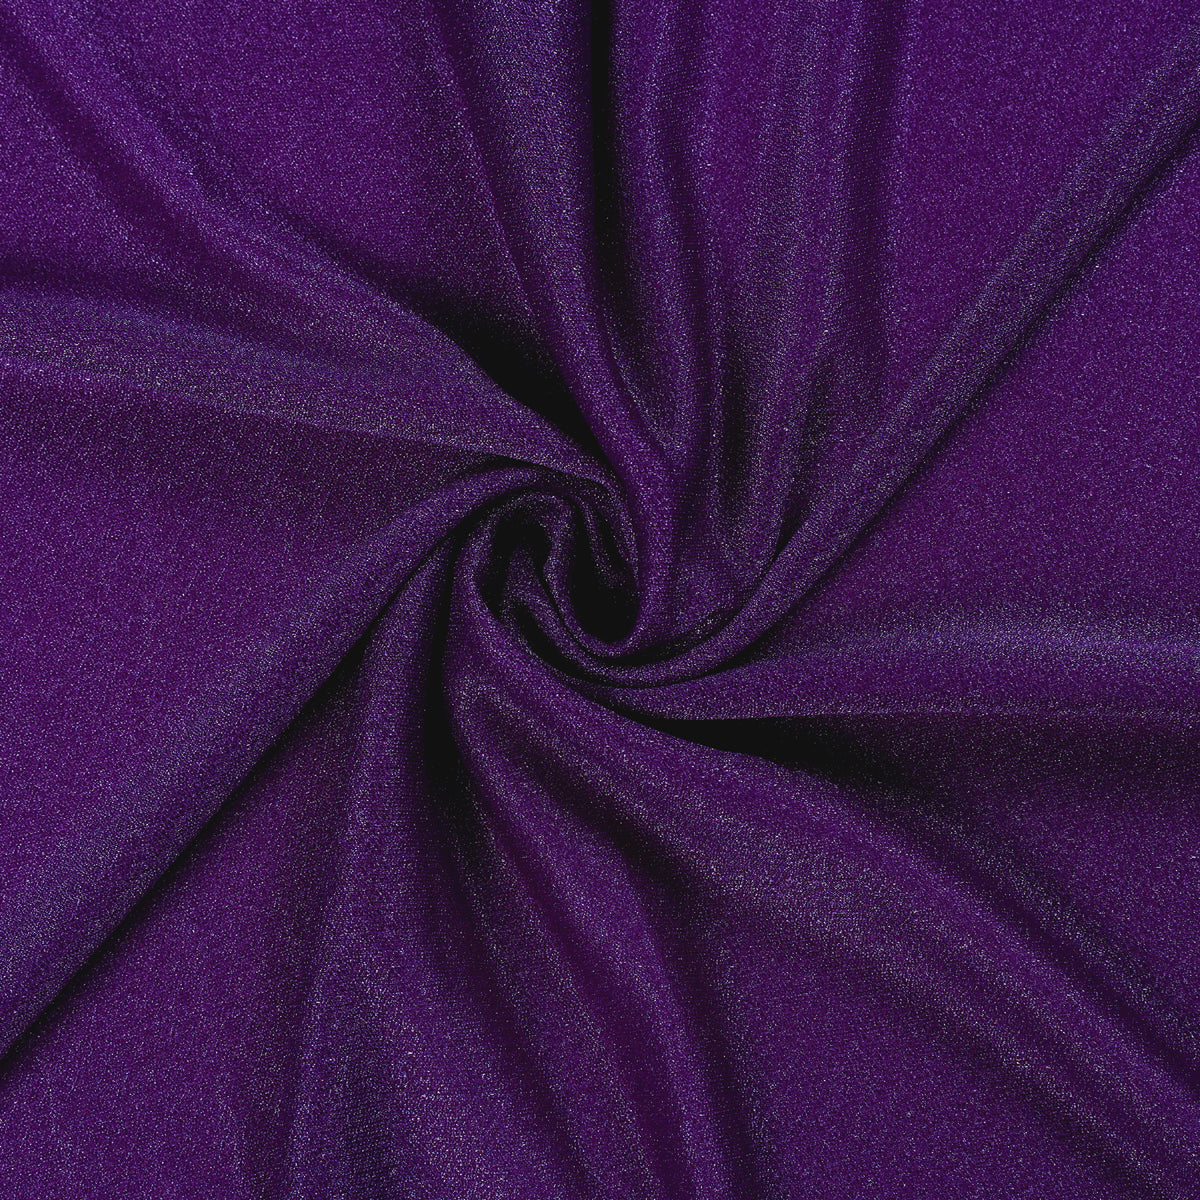 Purple,3141f36a-b167-48e0-9172-43fe16b8f2da